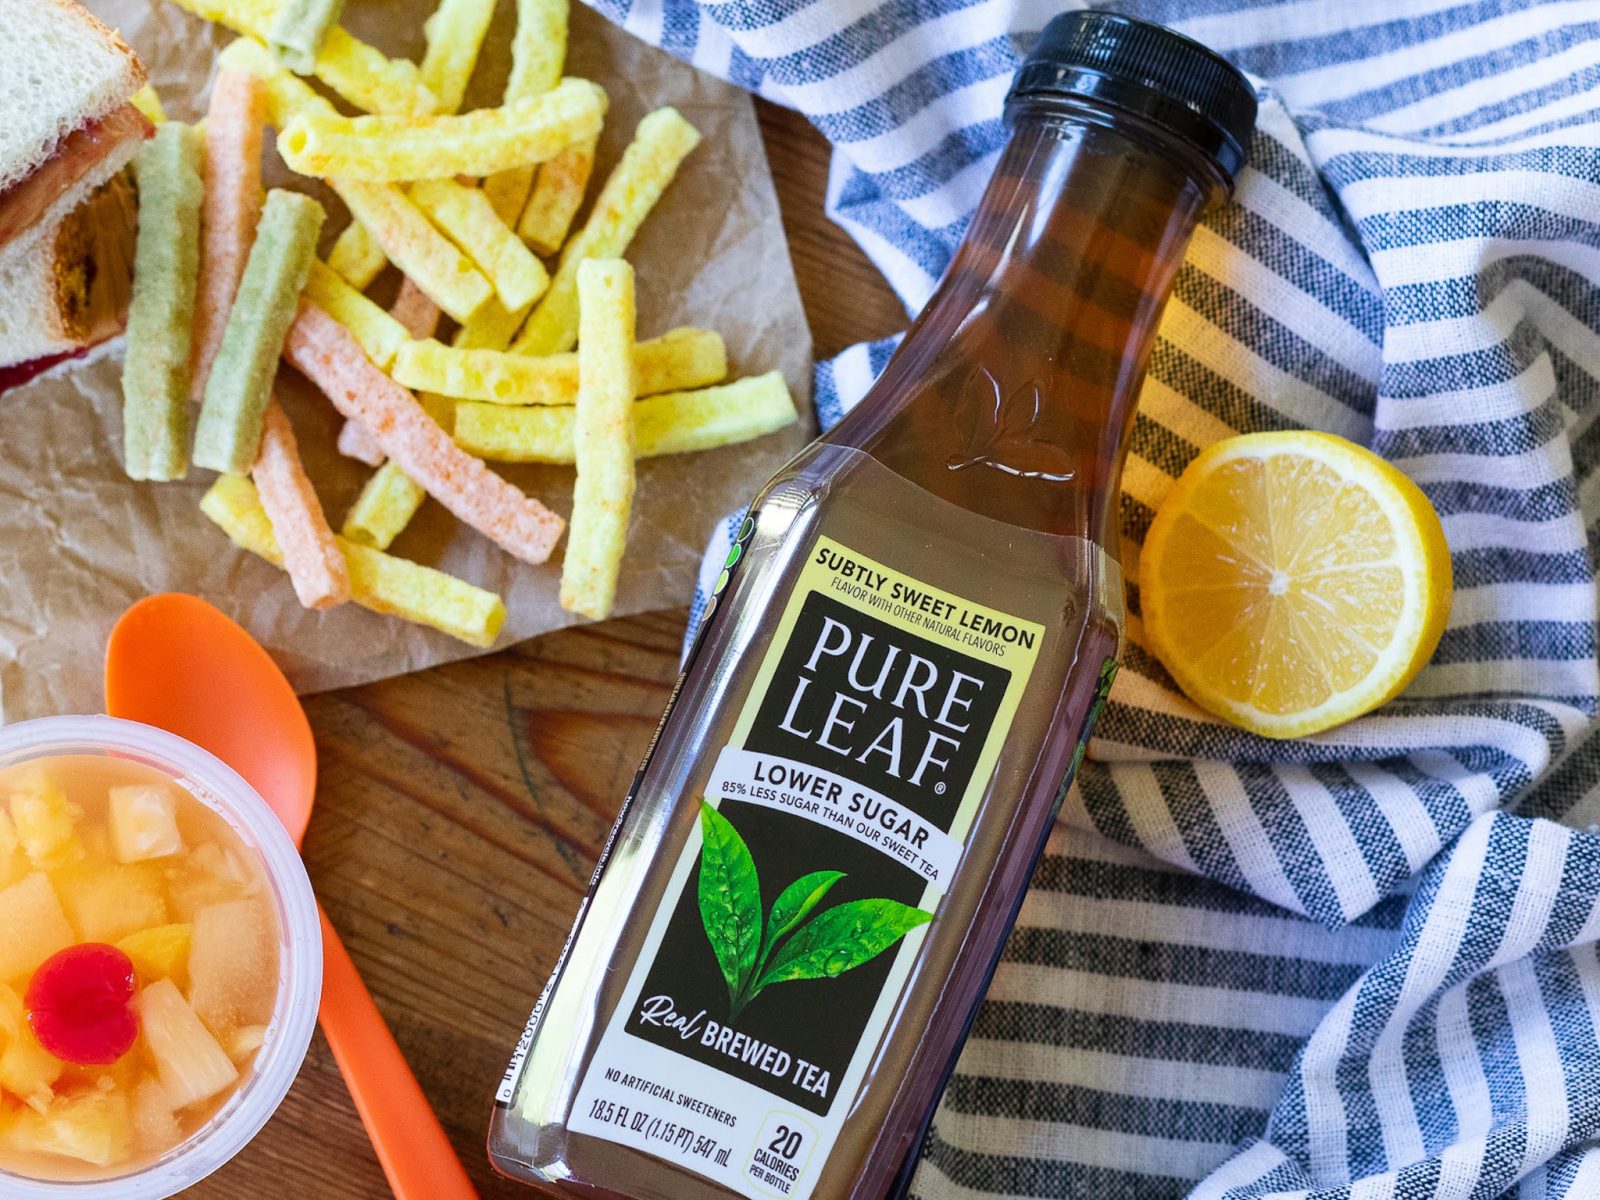 Get The Bottles Of Pure Leaf Tea For Just $1.49 At Kroger (Regular Price $2.59)